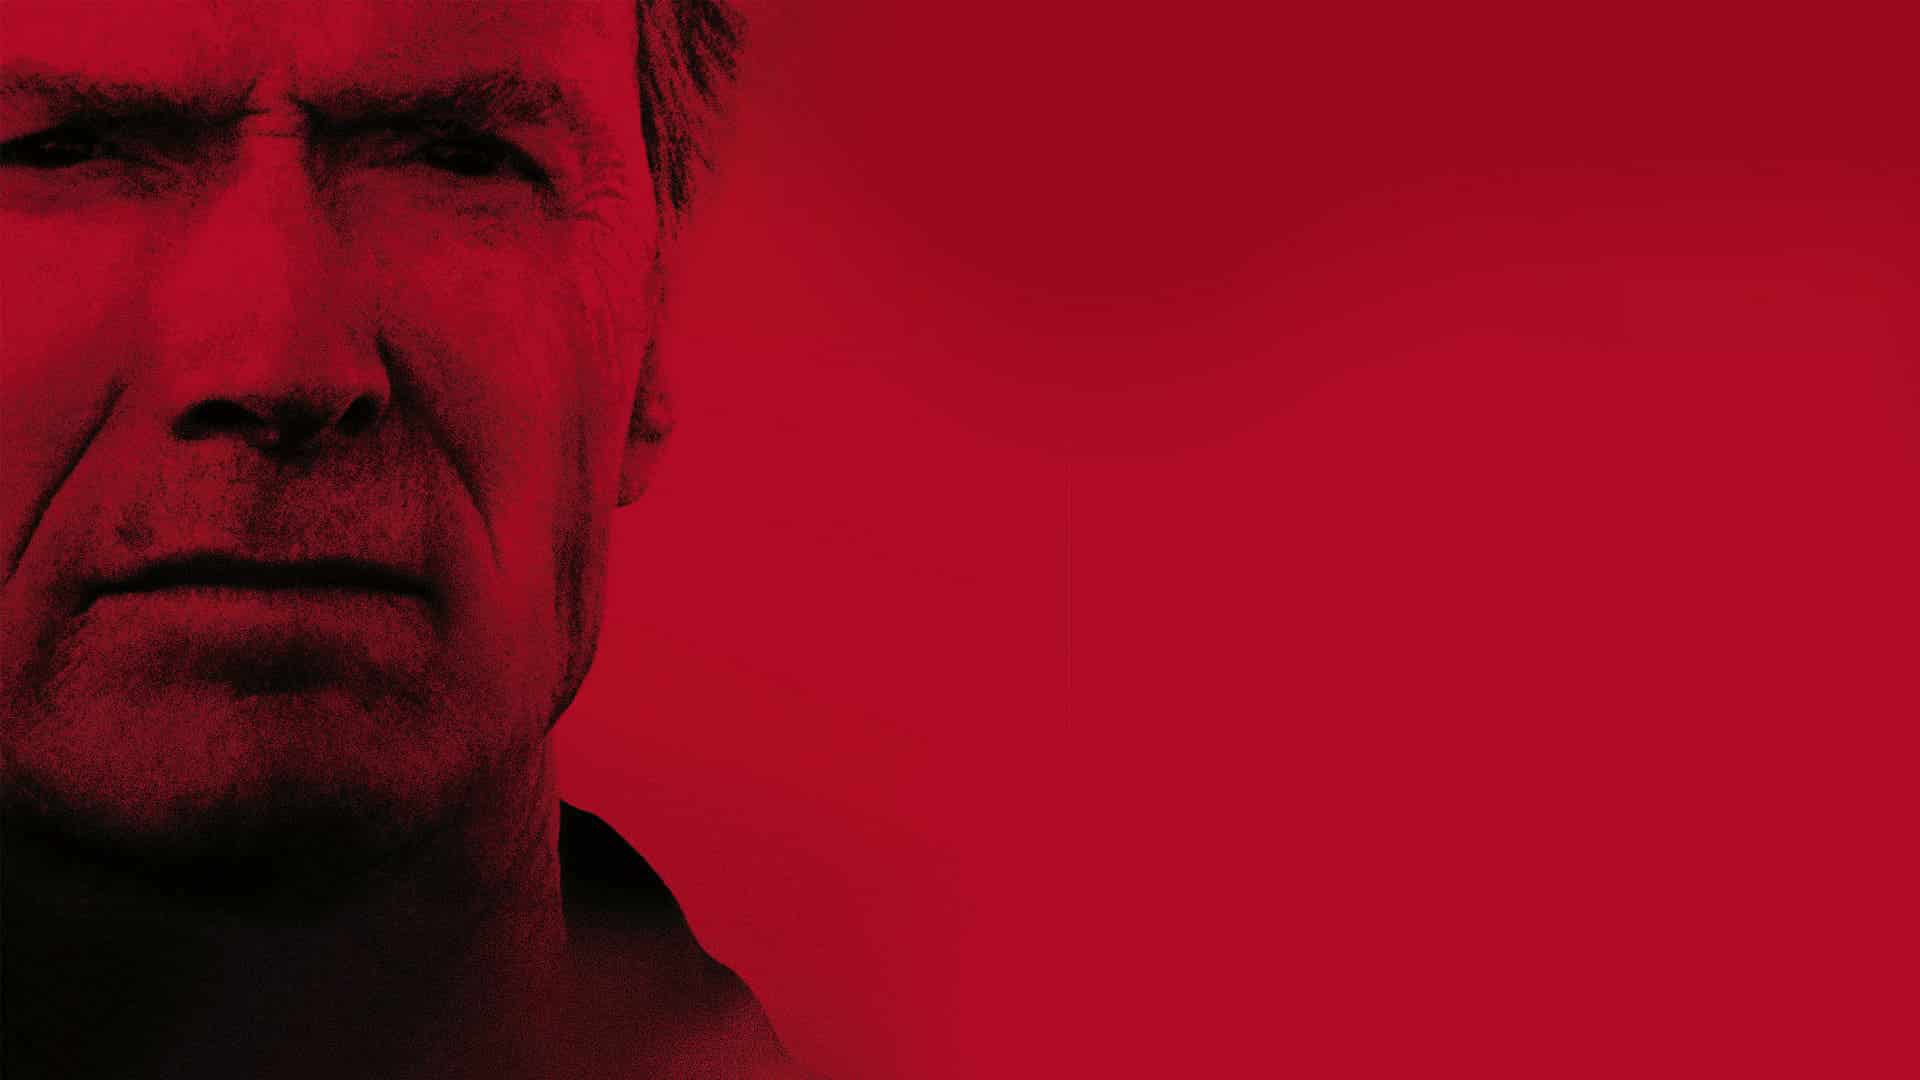 Debito di sangue: il significato del finale del film di Clint Eastwood